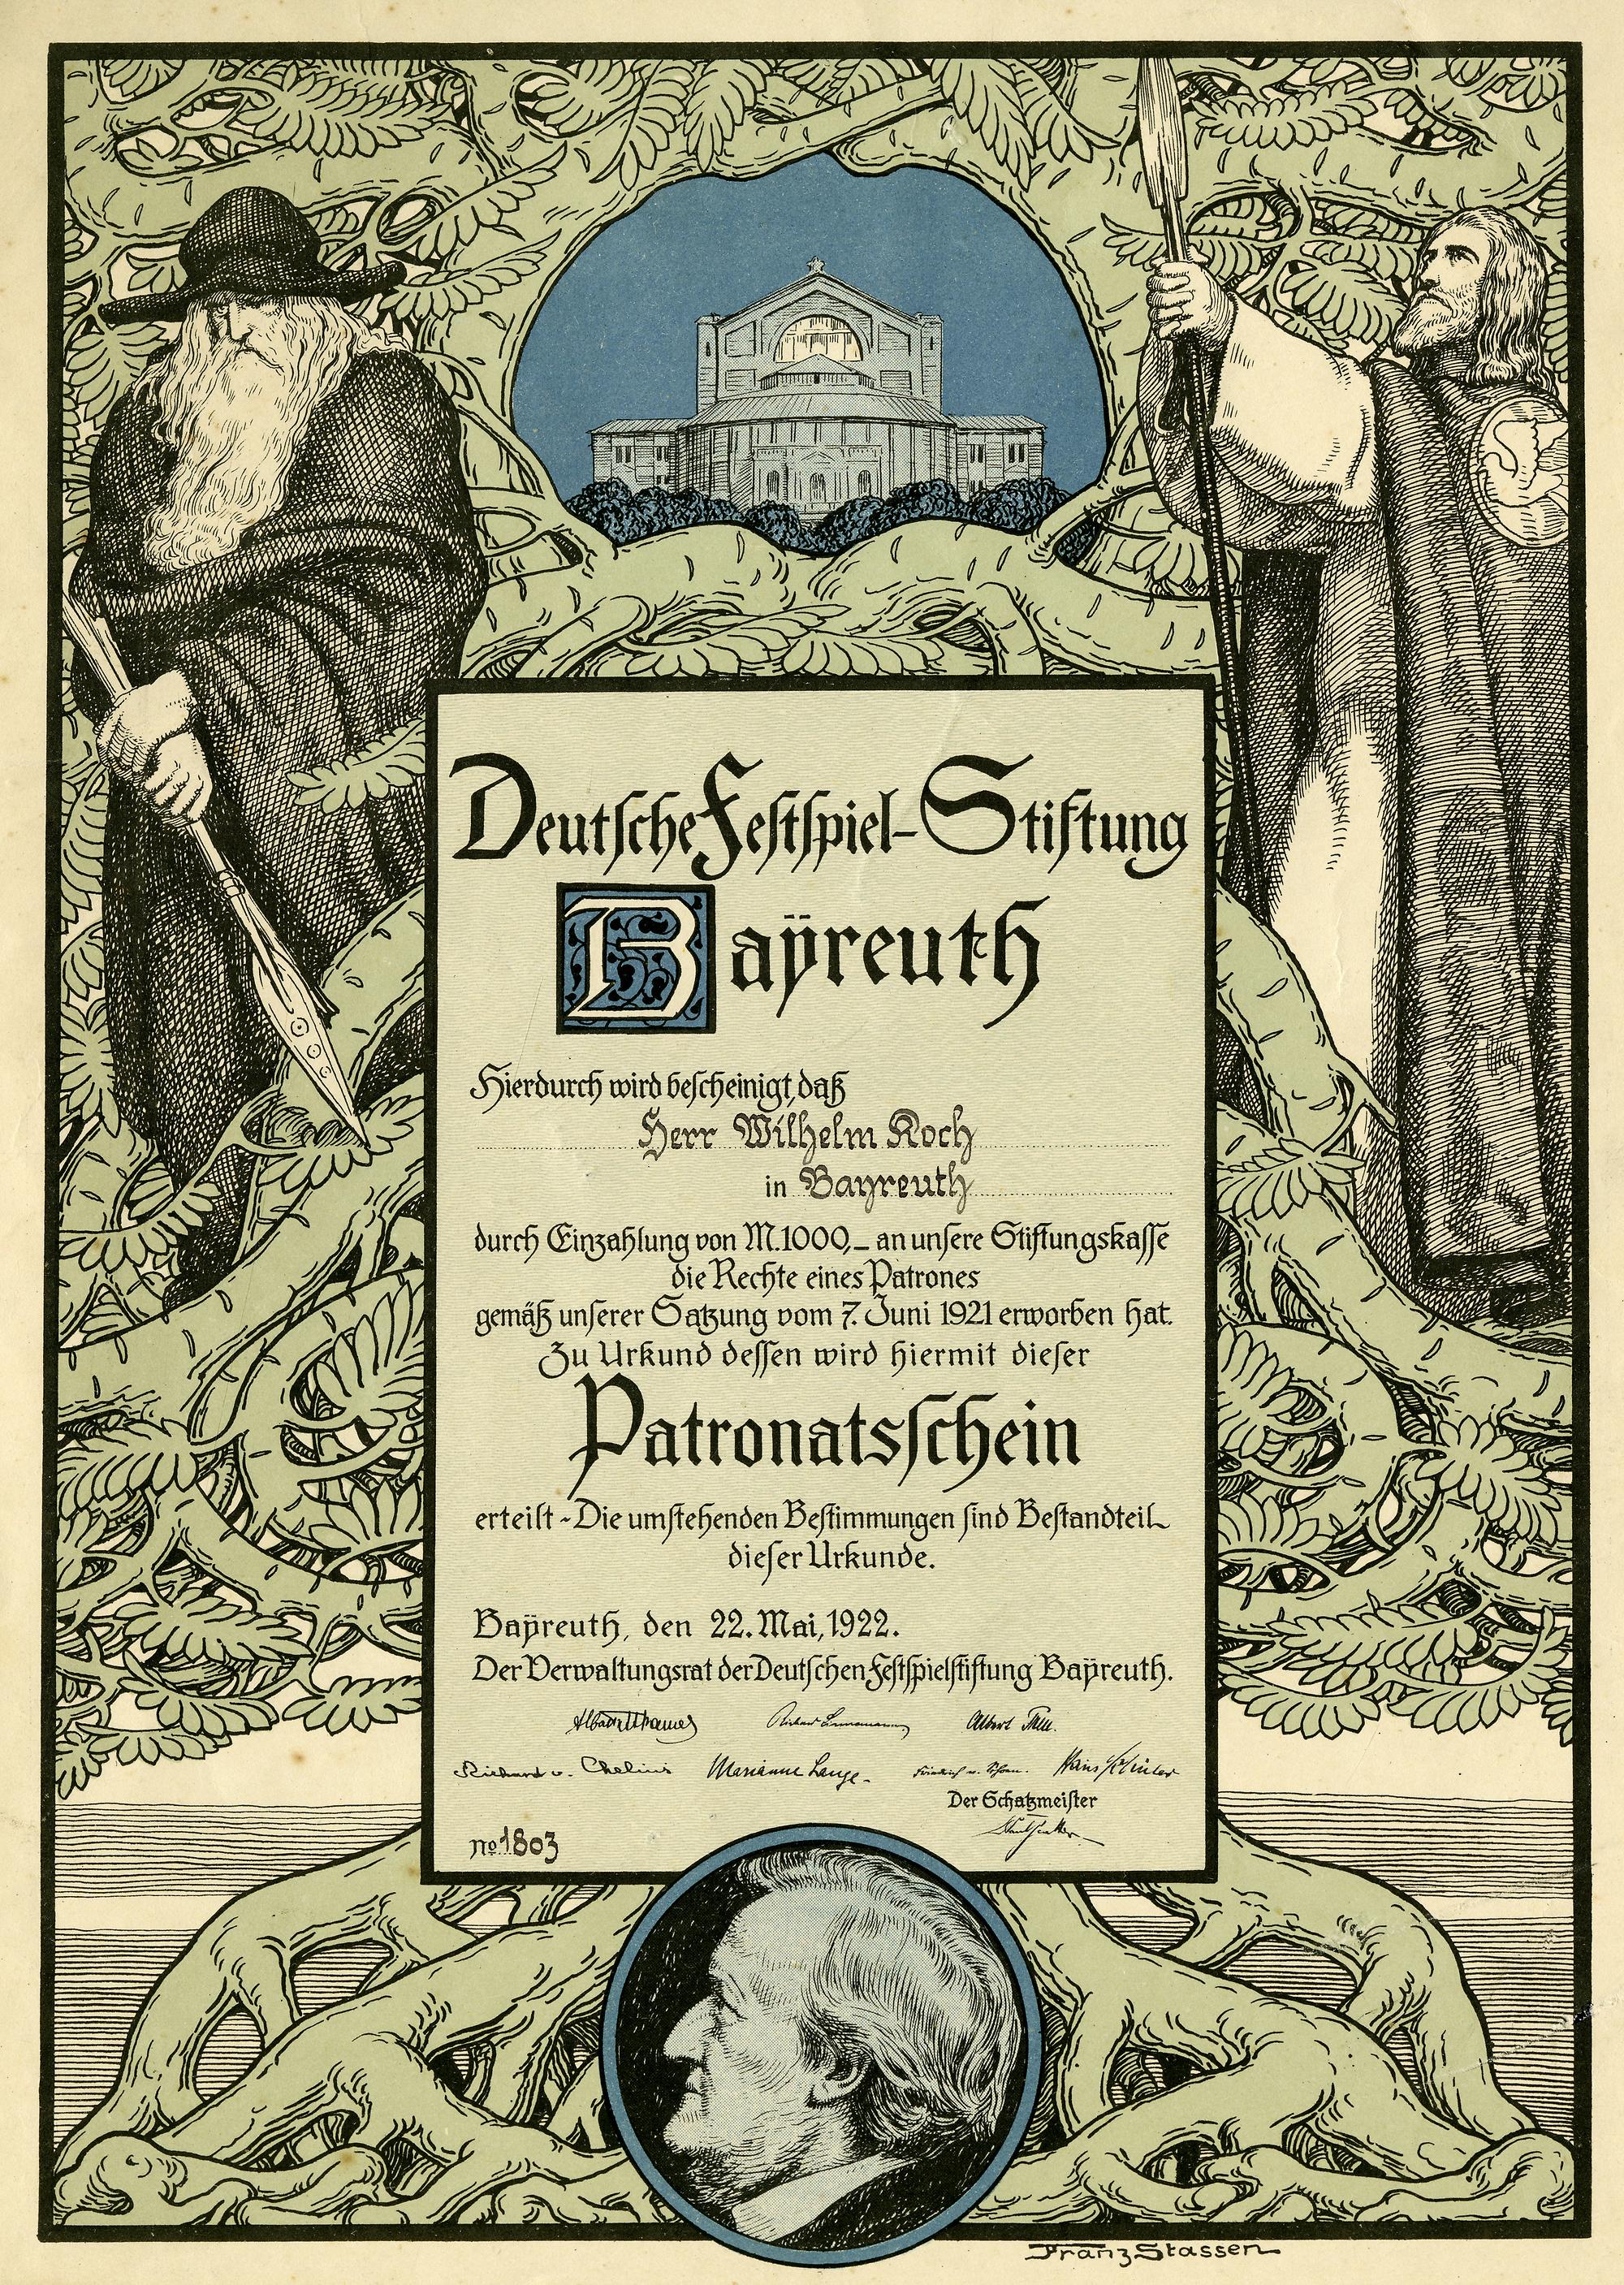 Patronatsschein der Deutschen Festspiel-Stiftung Bayreuth 1922, nach einem Entwurf von Franz Stassen.